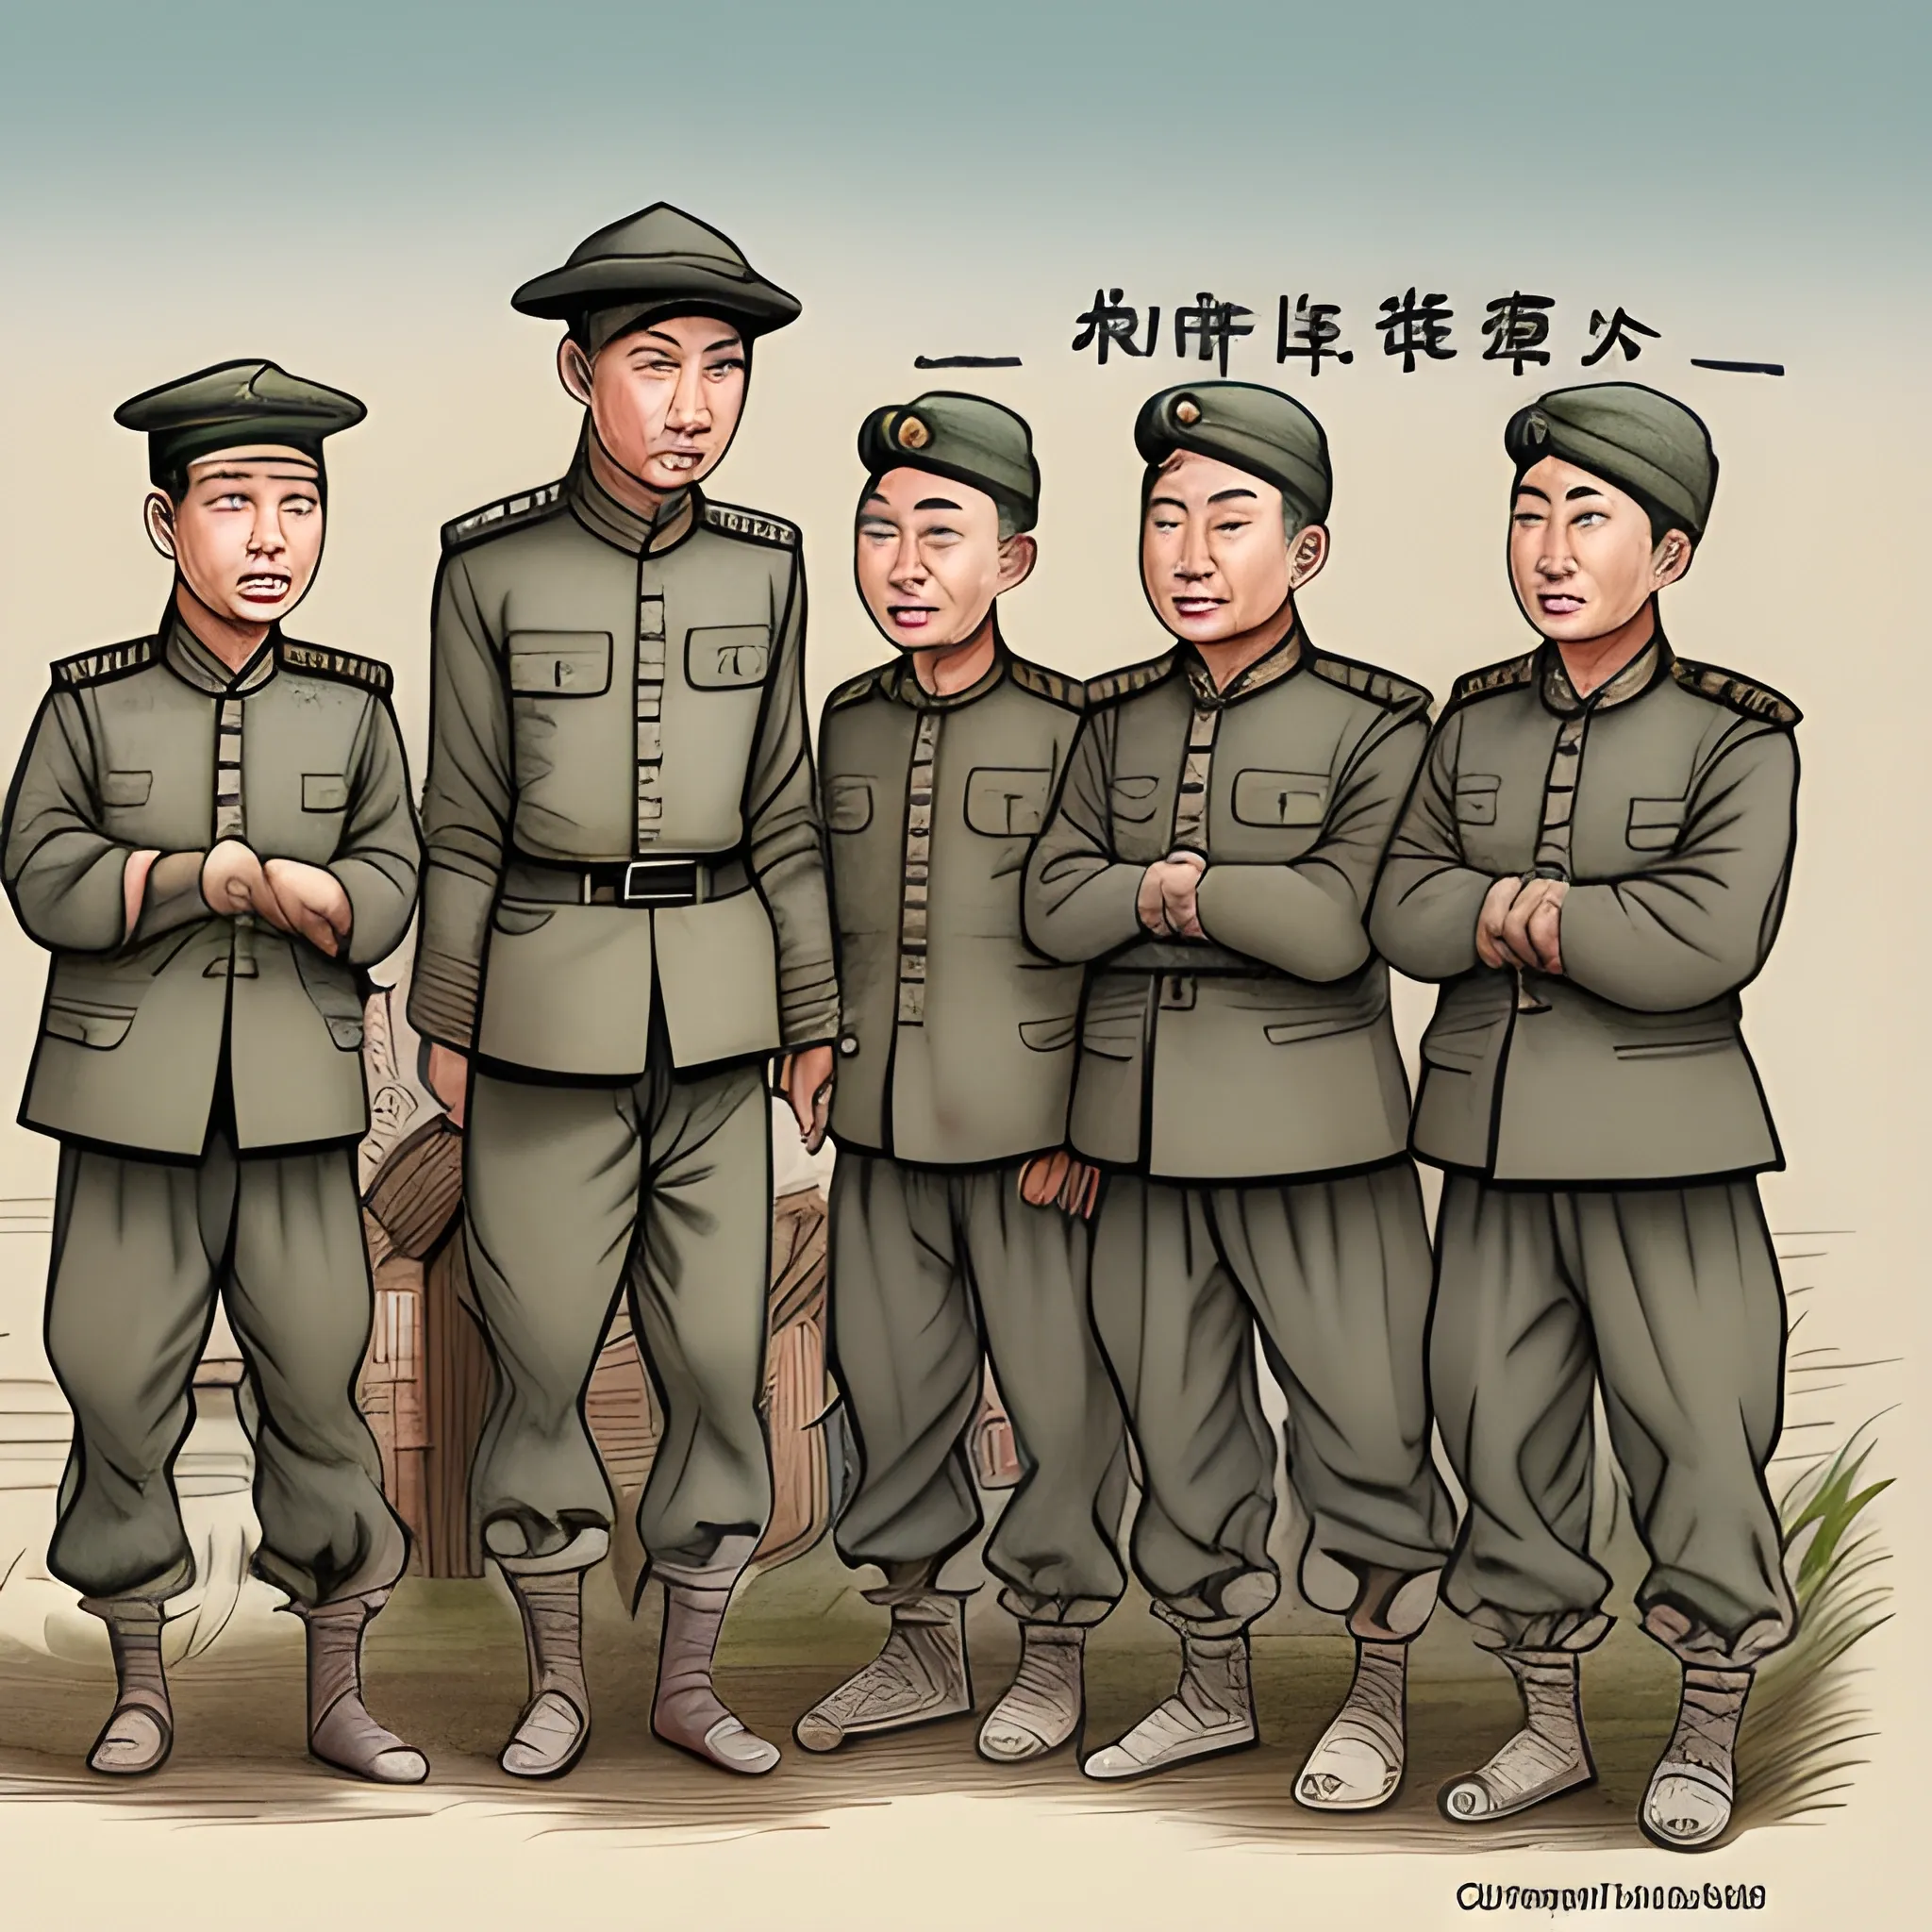 Chinese war prisoners

, Cartoon